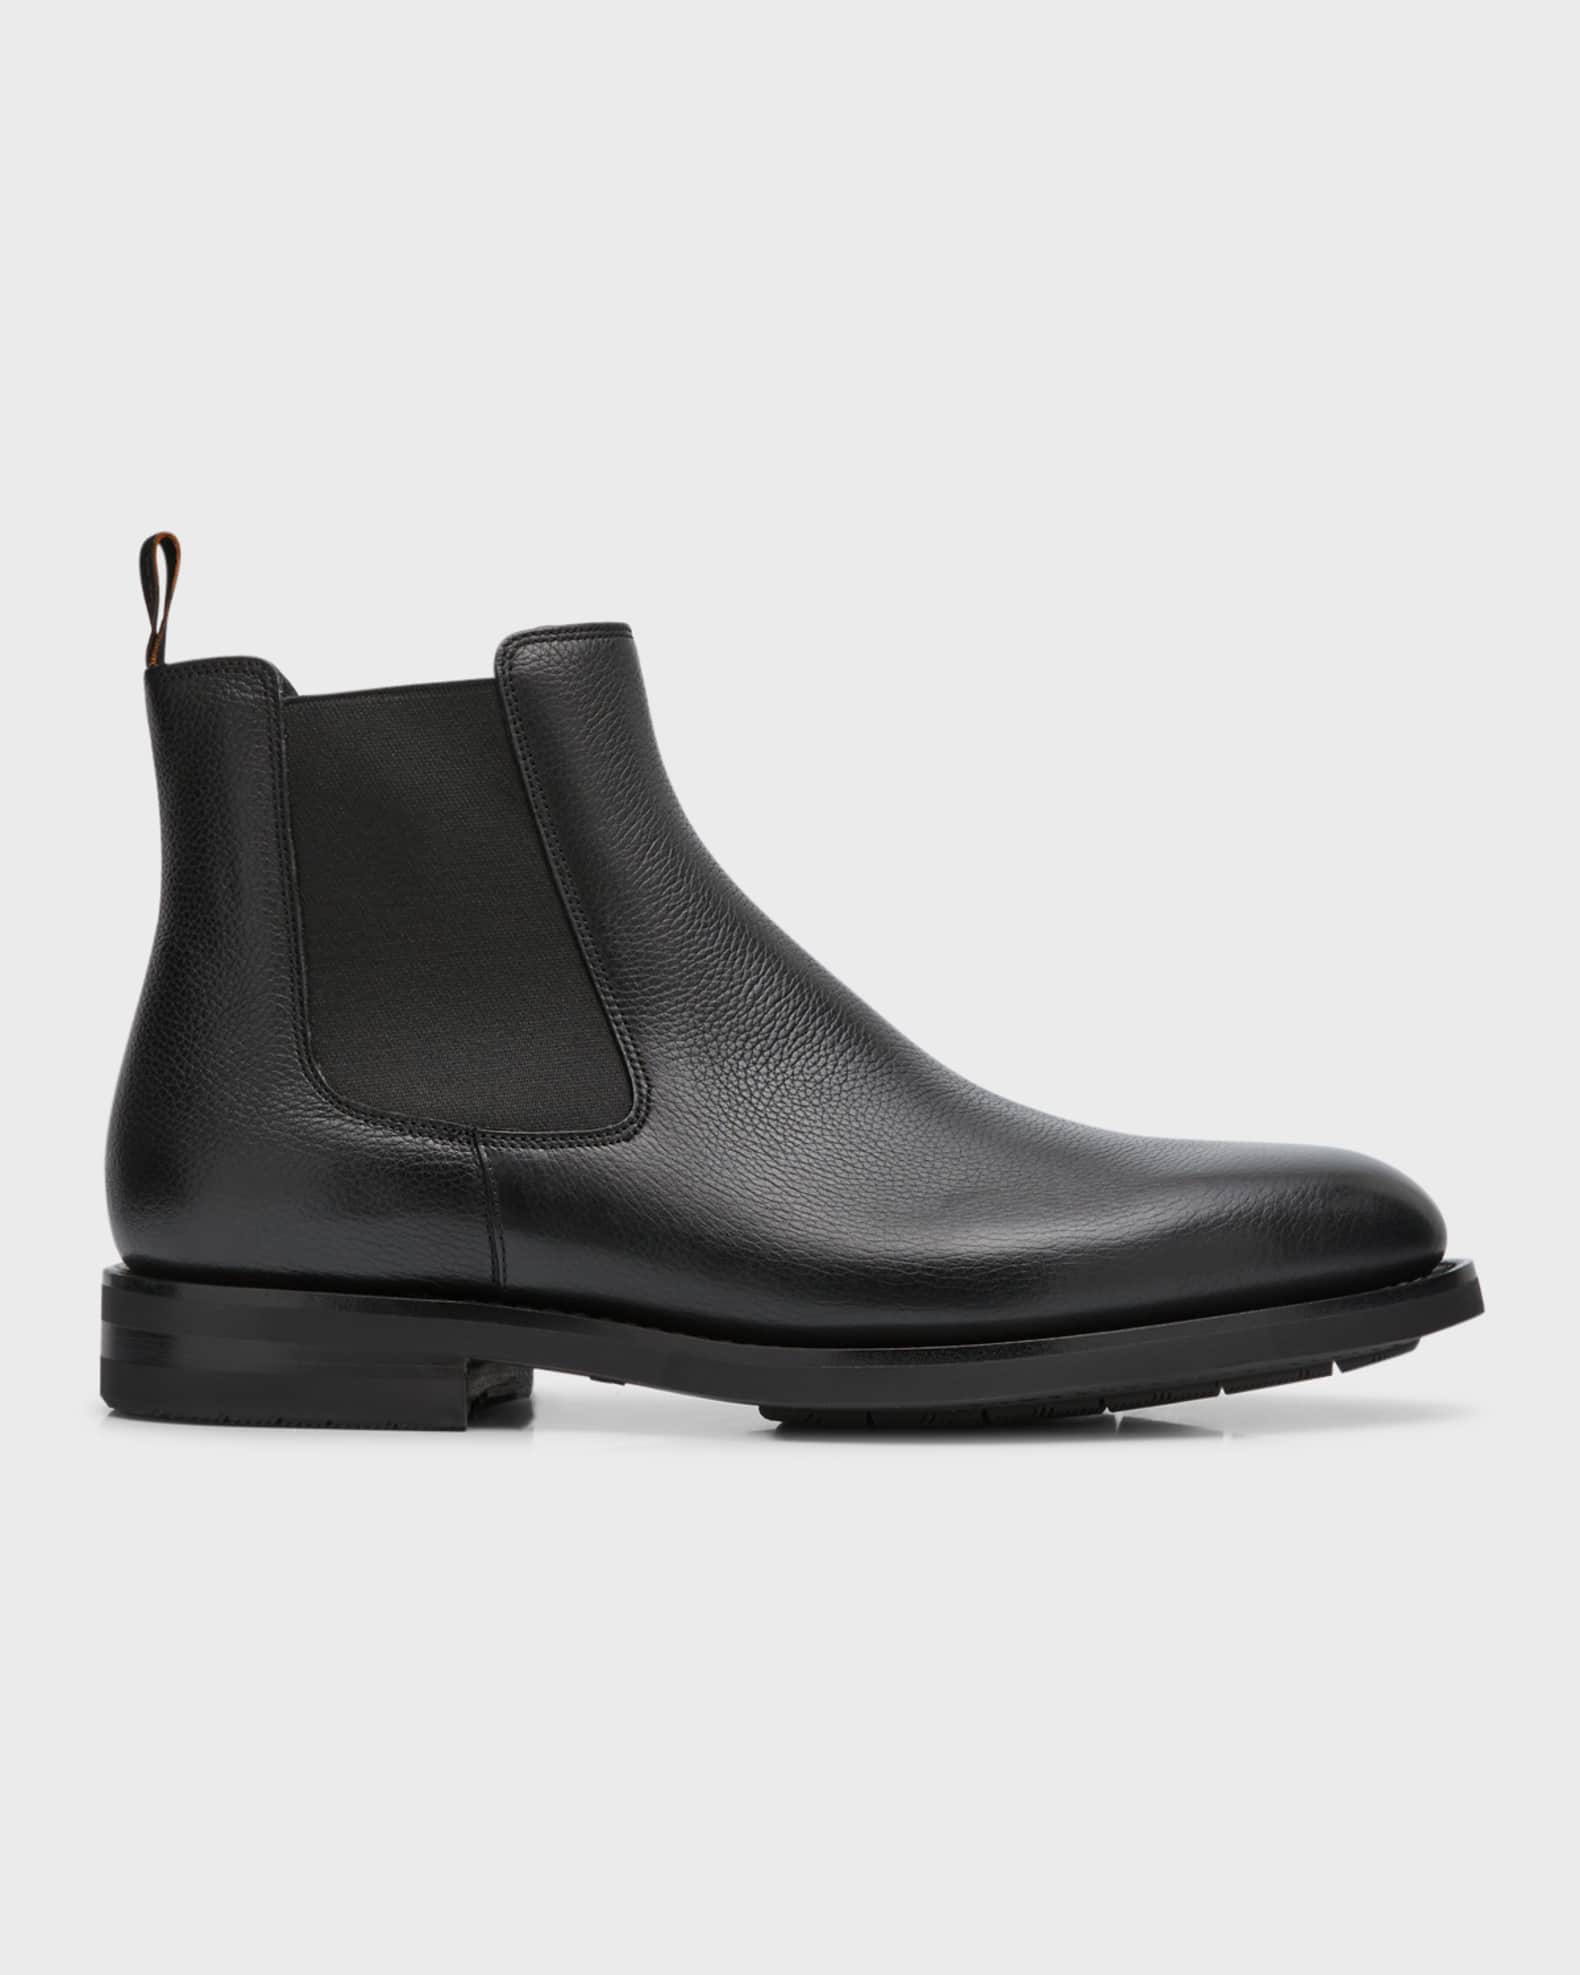 Santoni Men's Enver Leather Chelsea Boots | Neiman Marcus